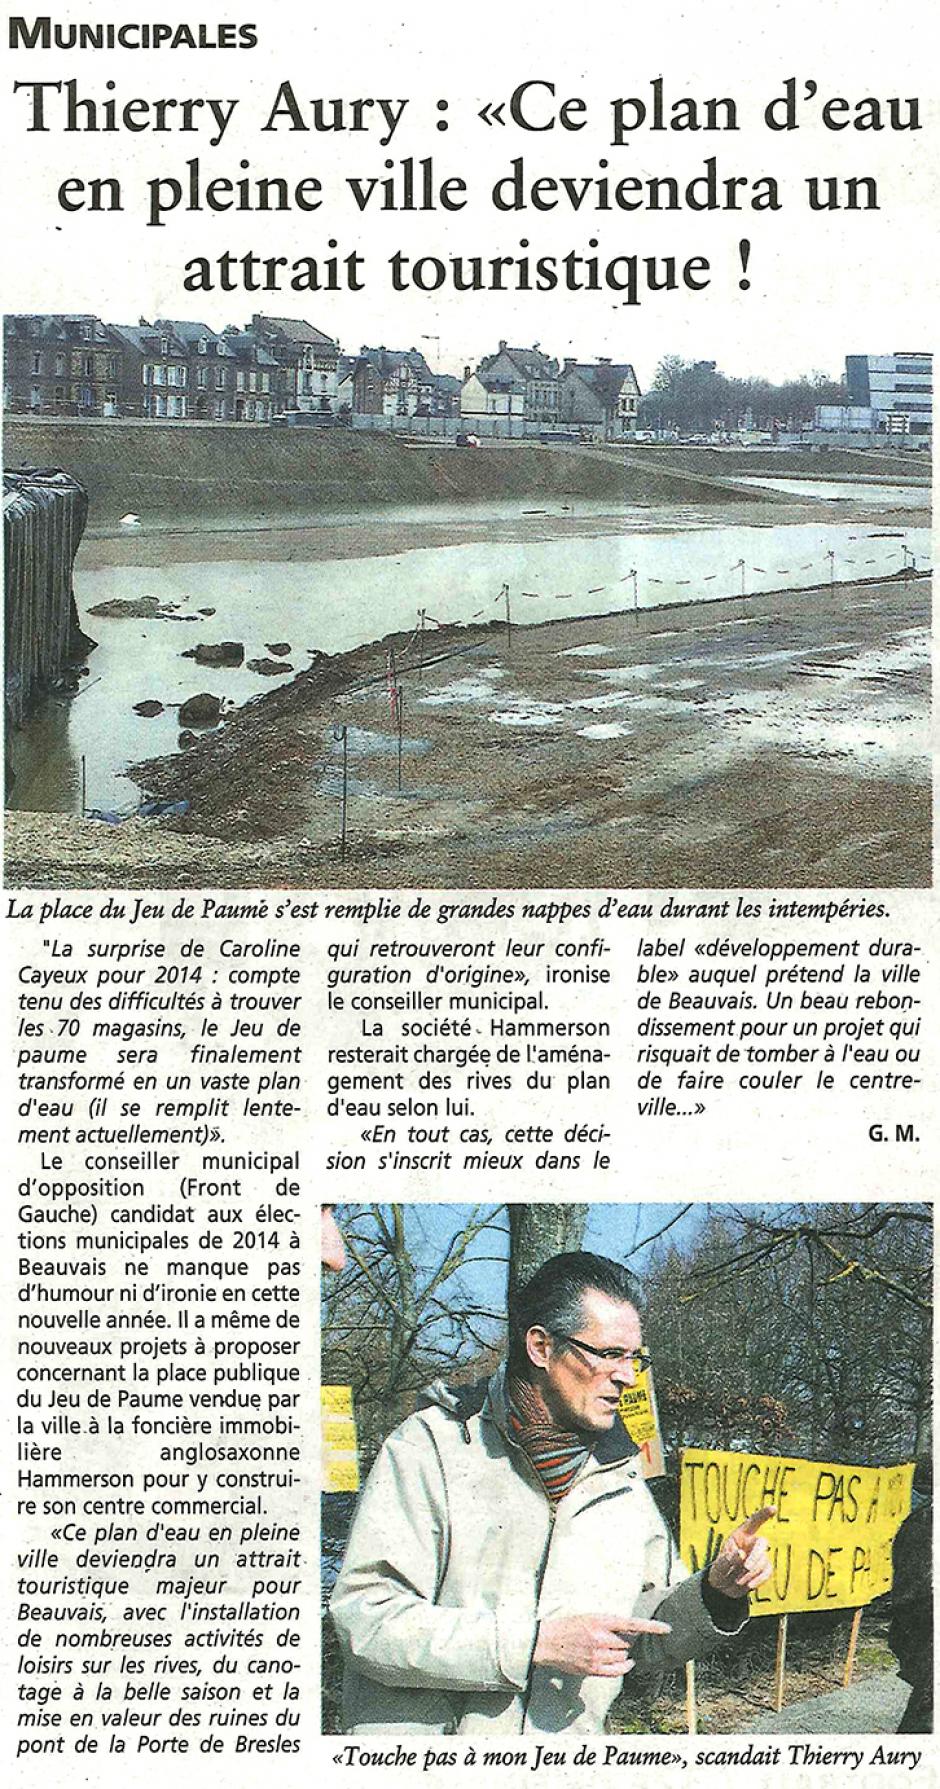 20140108-OH-Beauvais-M2014-Thierry Aury « Ce plan d'eau en pleine ville deviendra un attrait touristique ! »